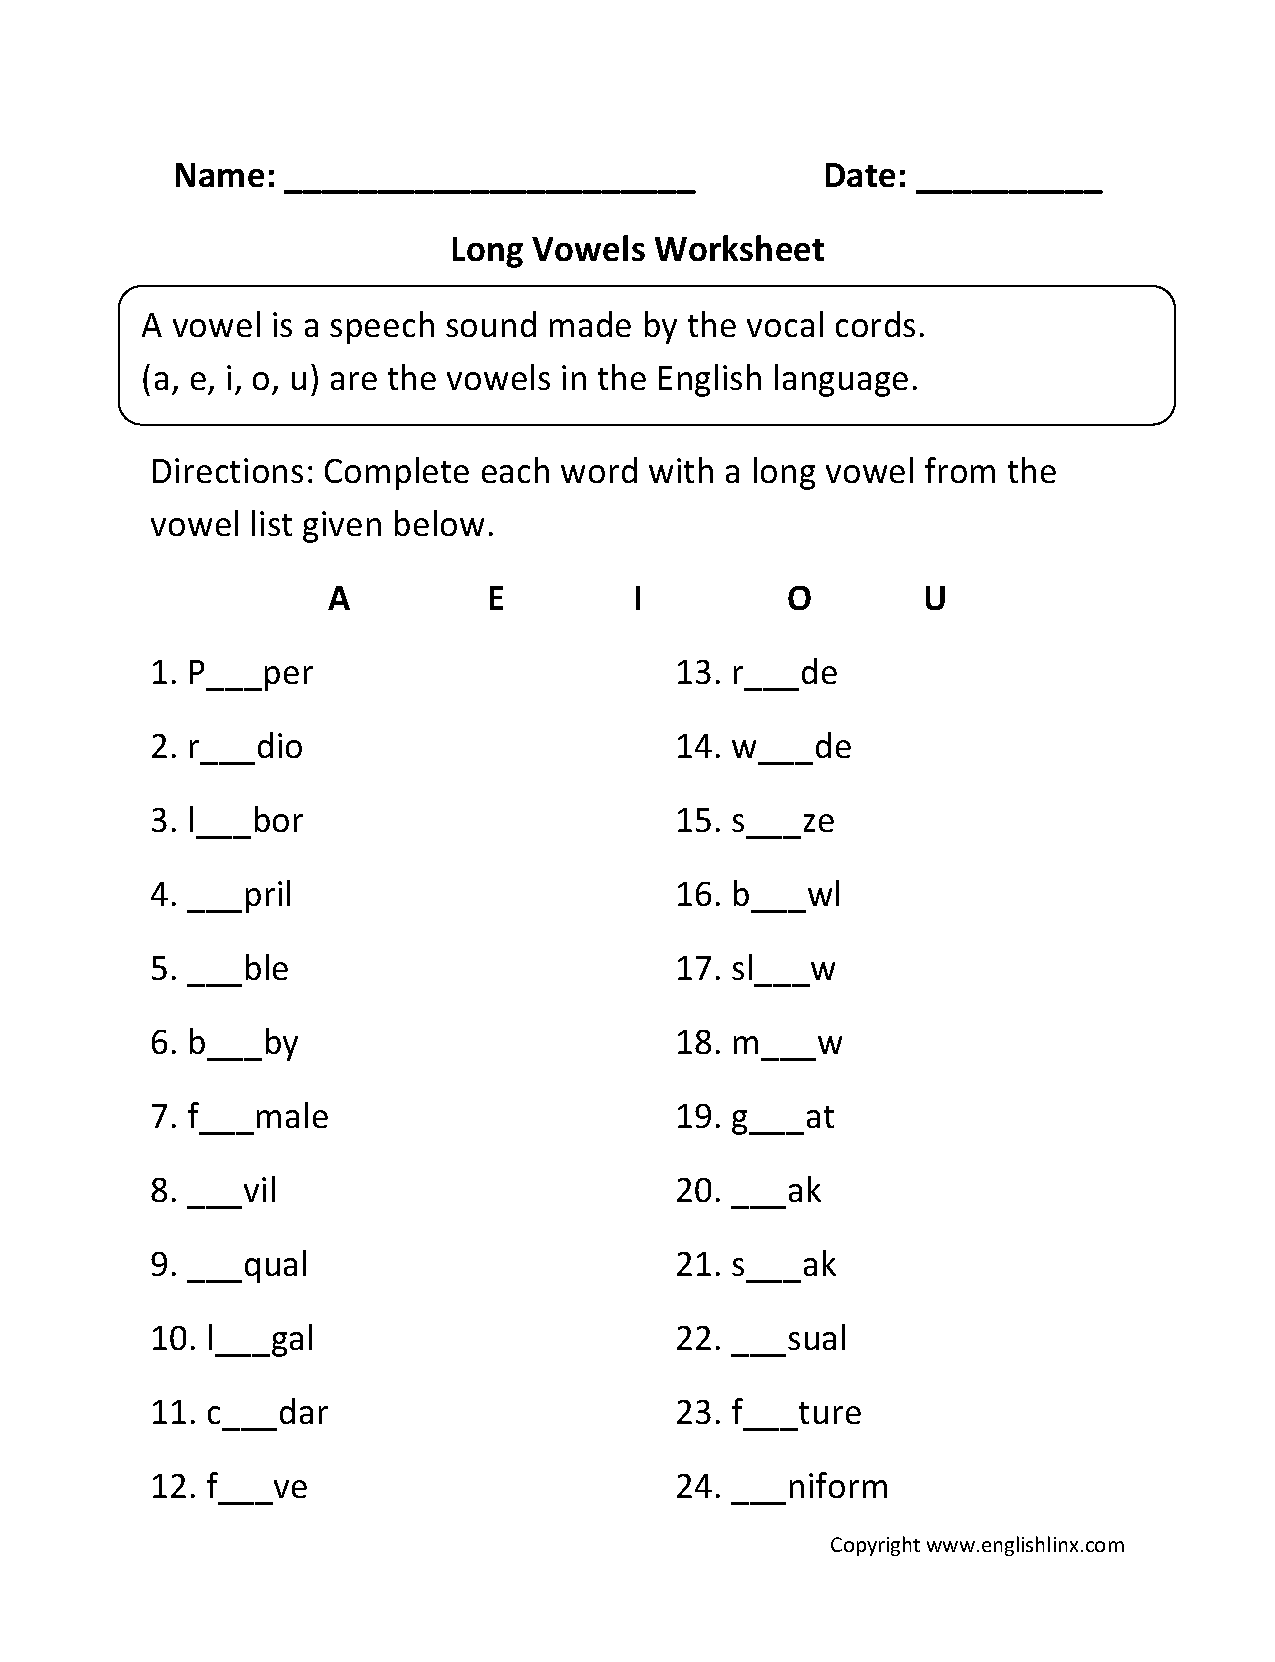 Long Vowel Worksheet